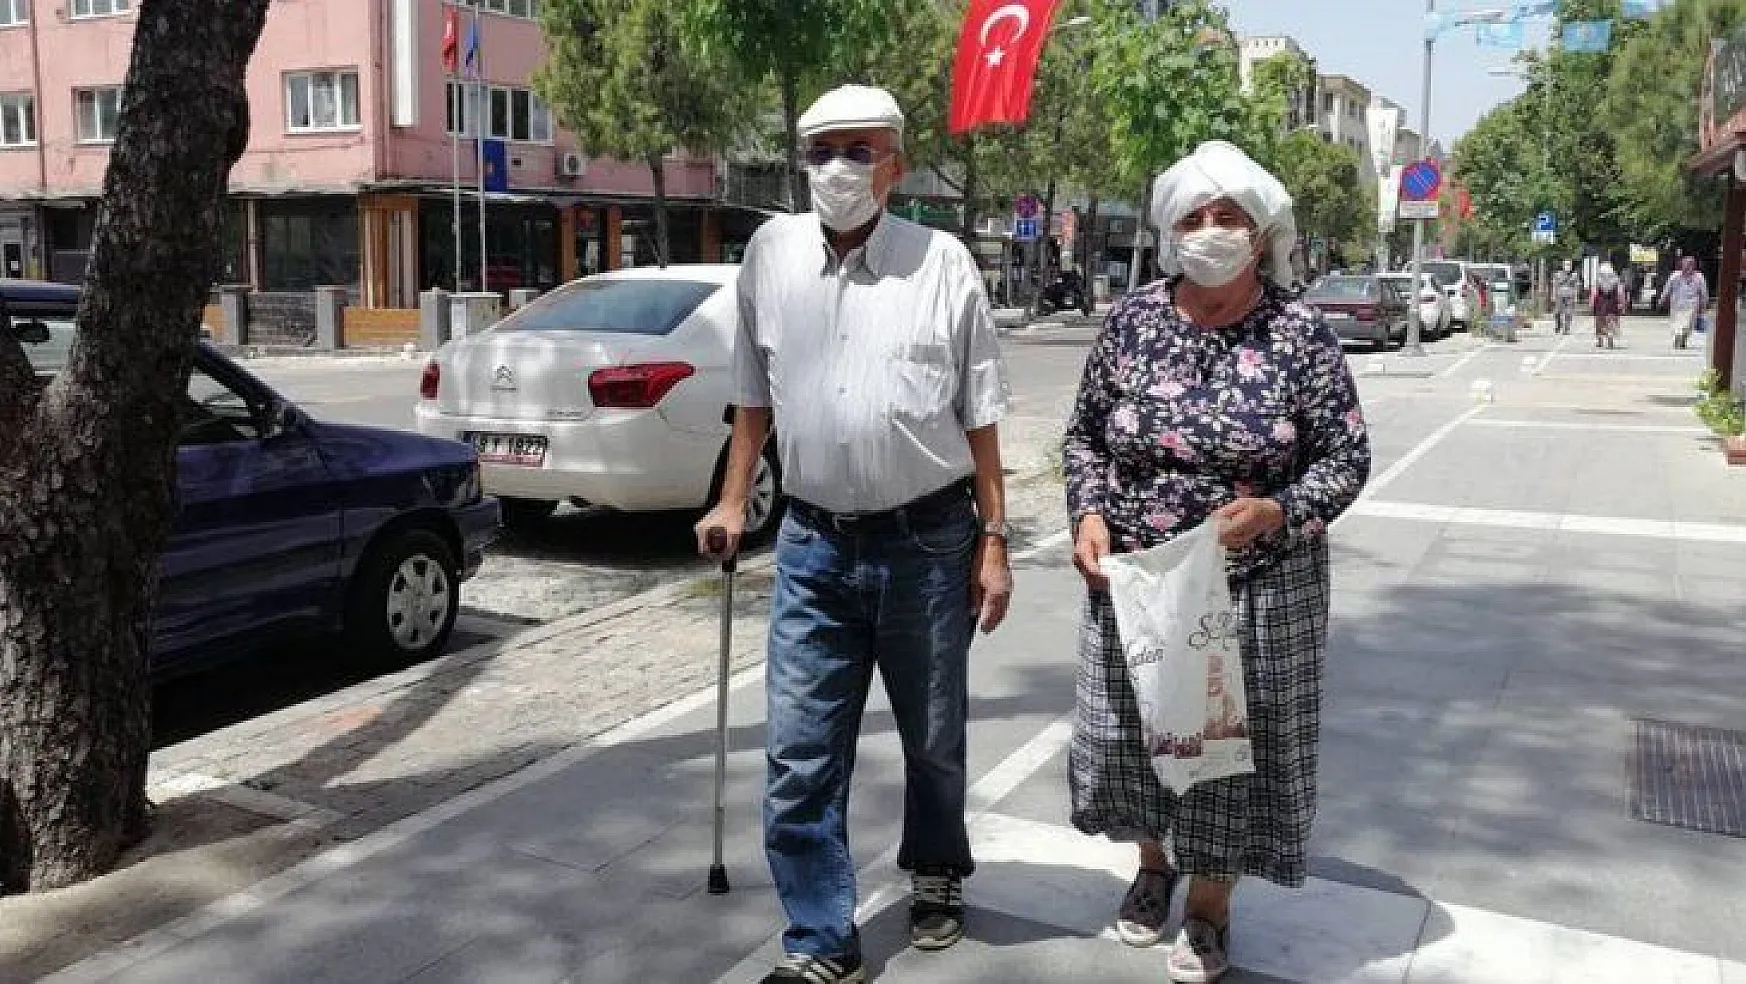 65 yaş üstü ve kronik rahatsızlığı bulunan vatandaşlar ikinci kez sokağa çıktı